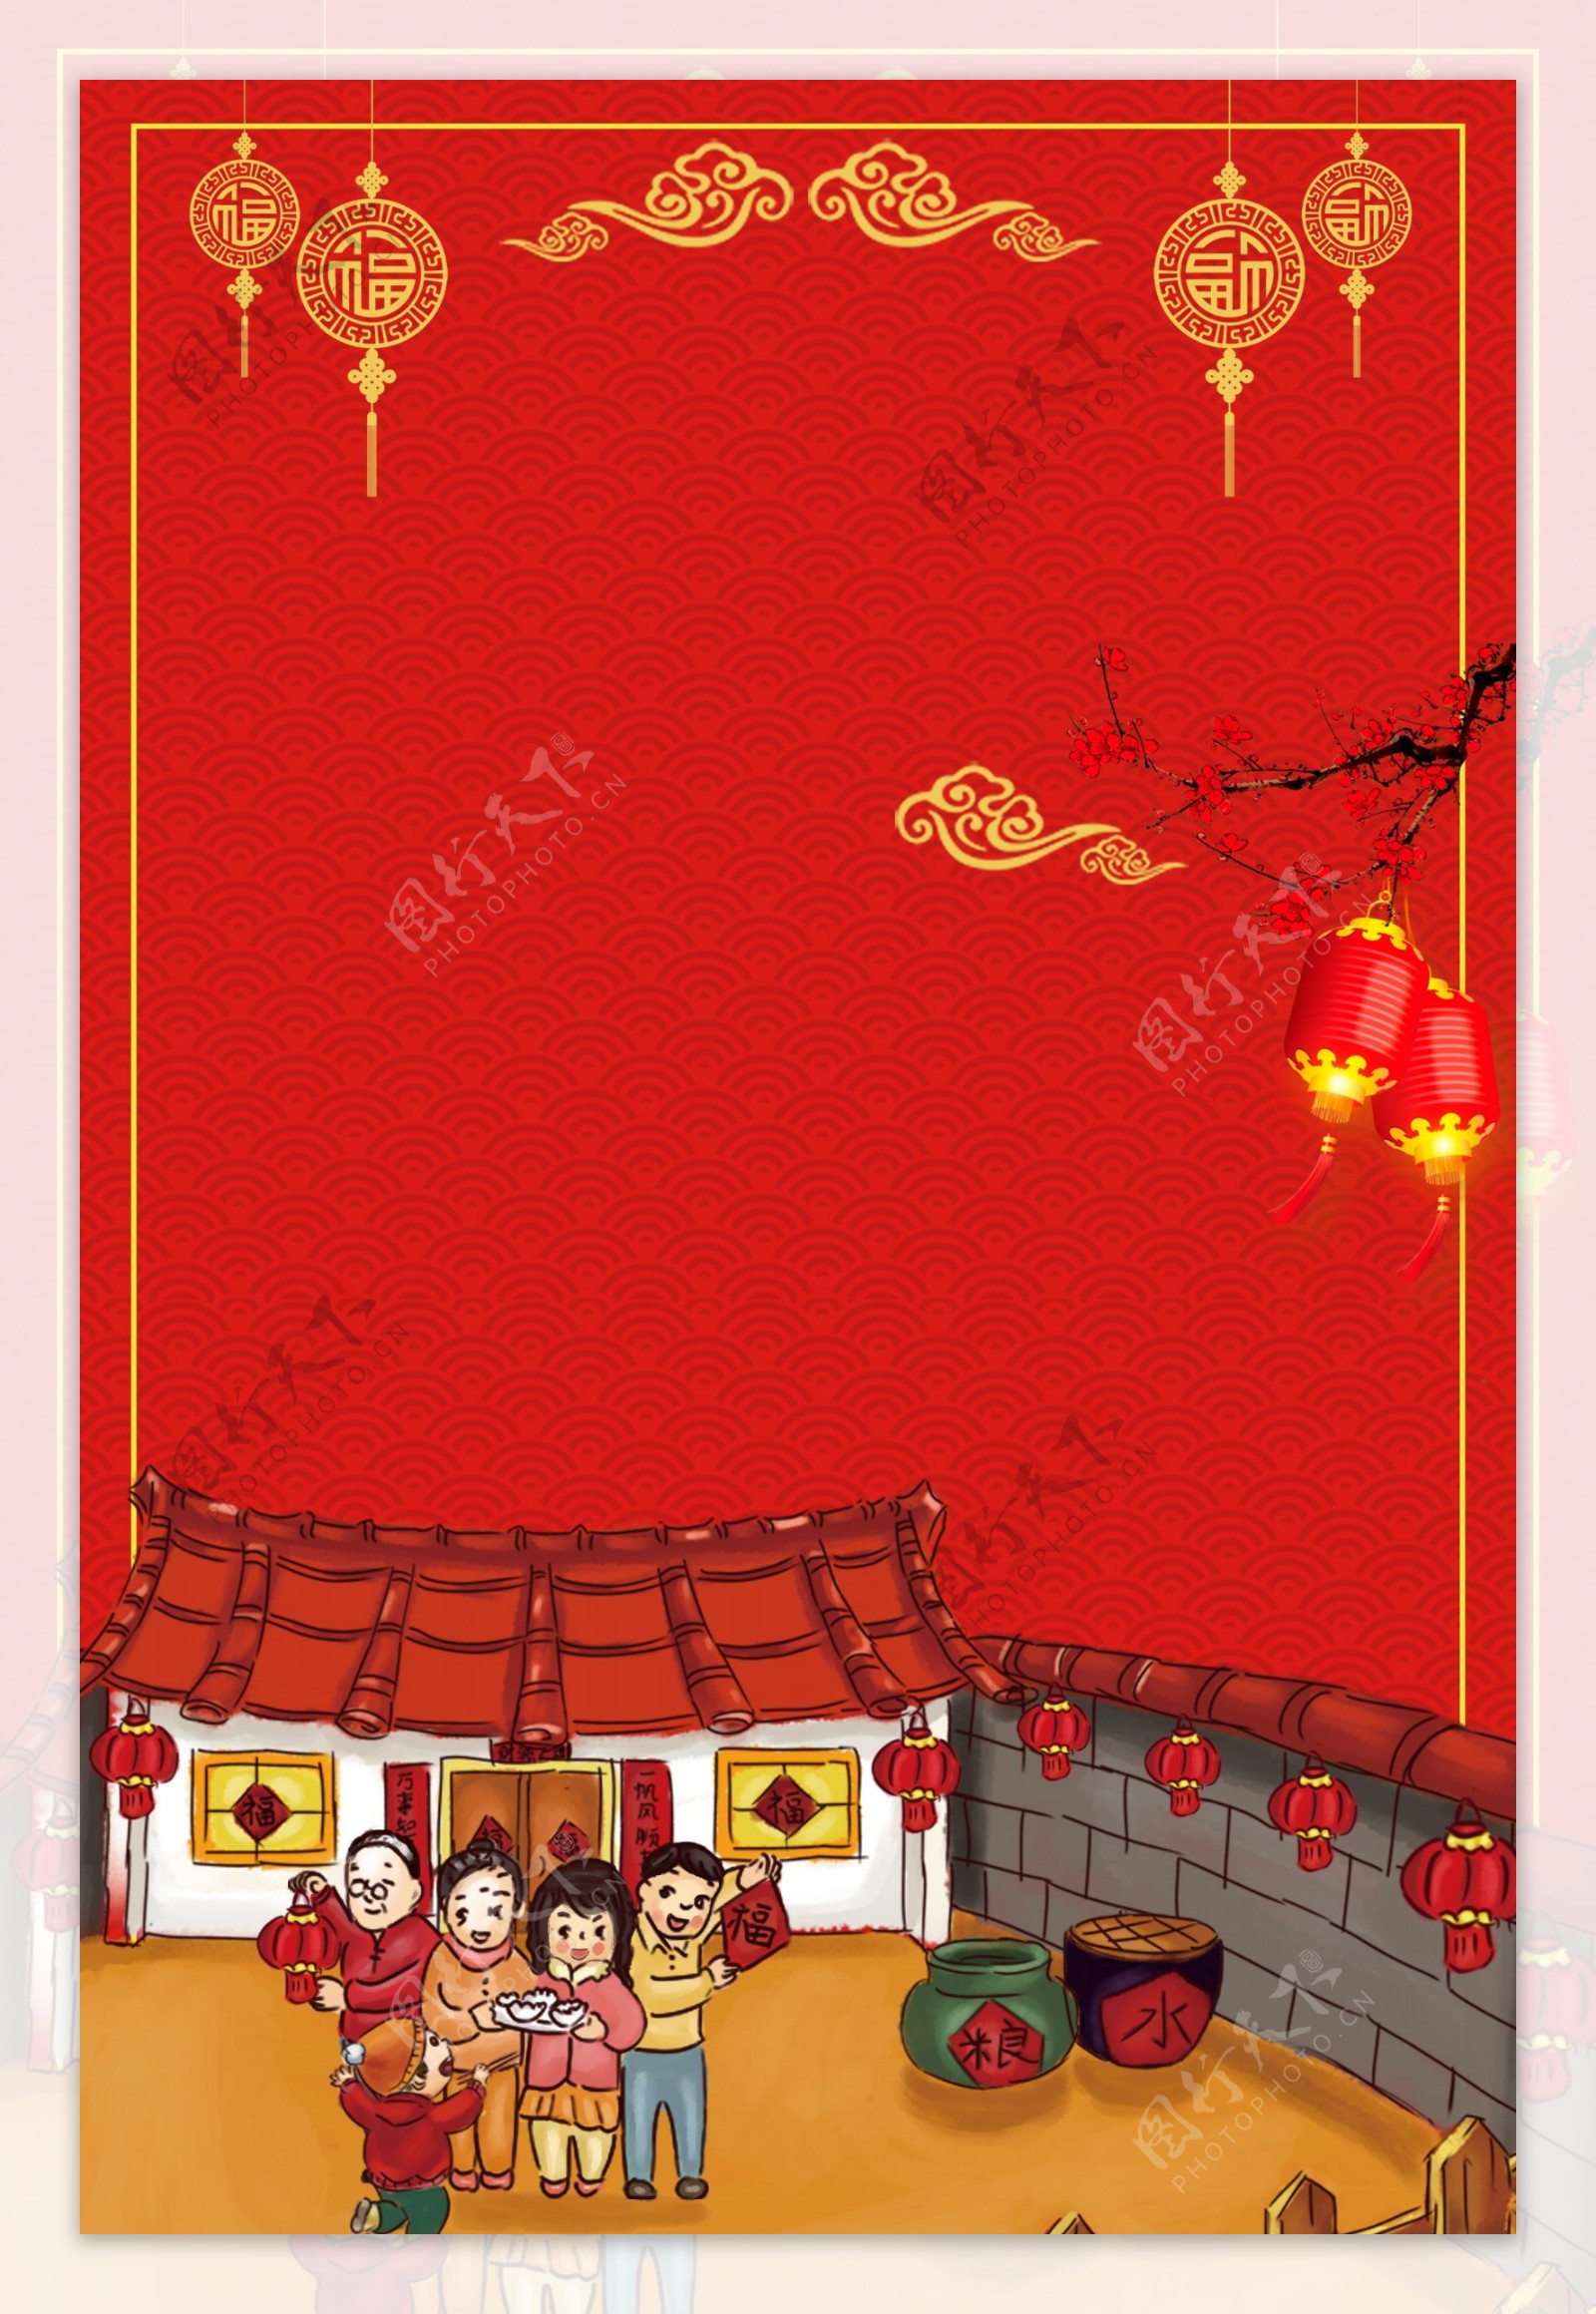 财神传统节日新年快乐广告背景图